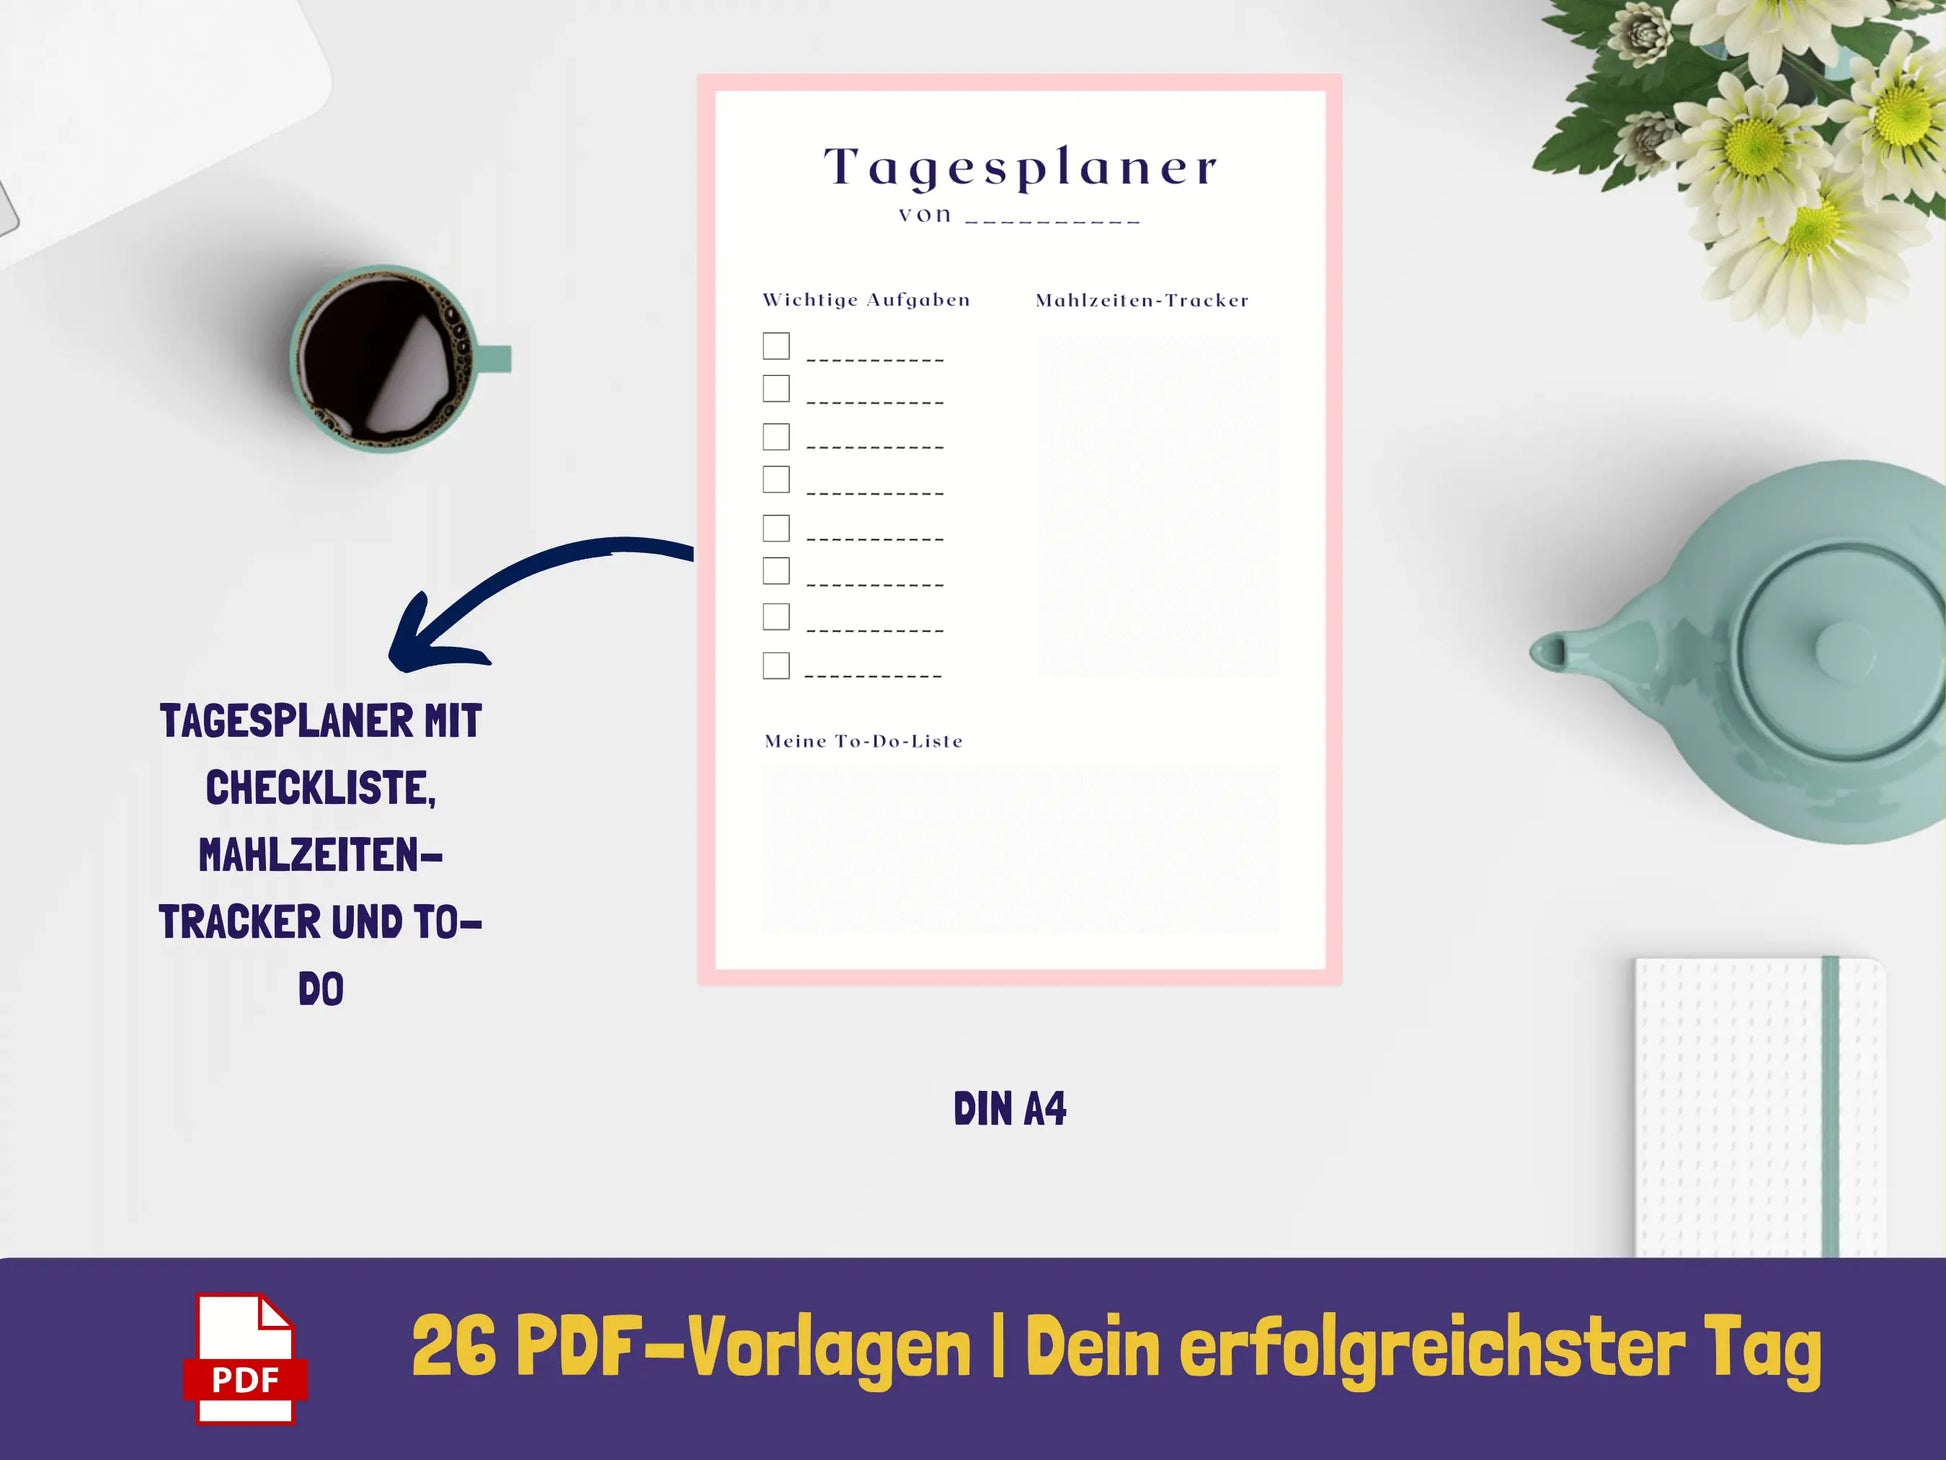 Tagesplaner: Dein erfolgreichster Tag - Variante Blumen {26 Seiten} PDF AndreasJansen Vorlage